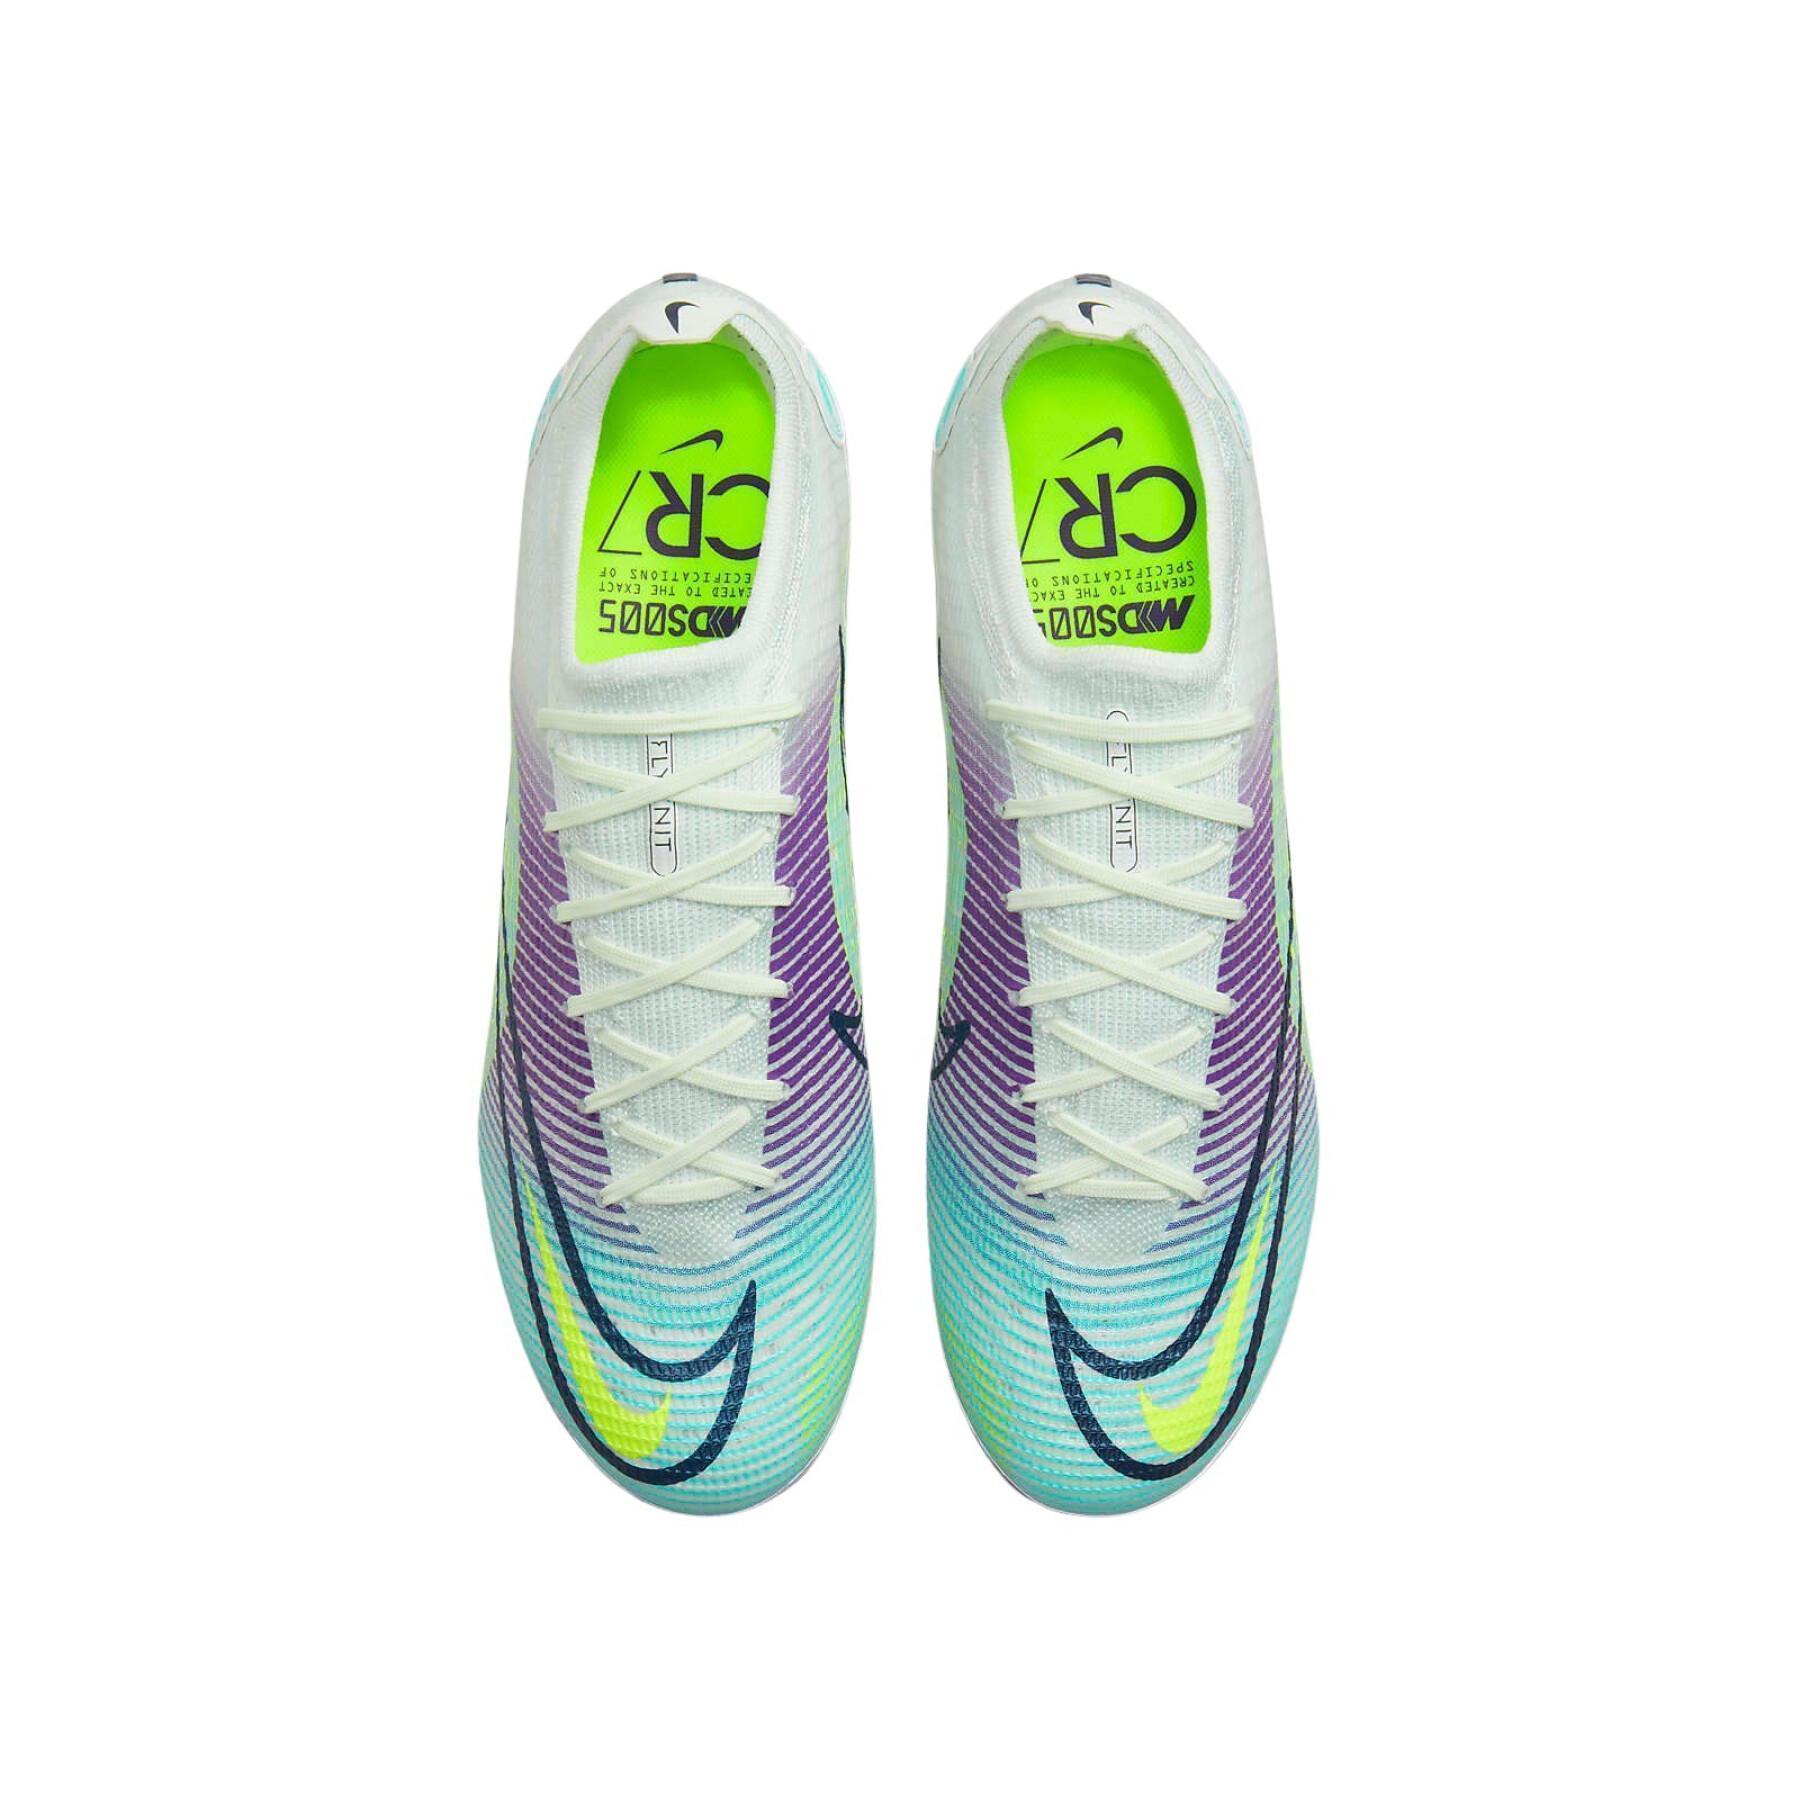 Botas de fútbol Nike Vapor 14 élite MDS FG